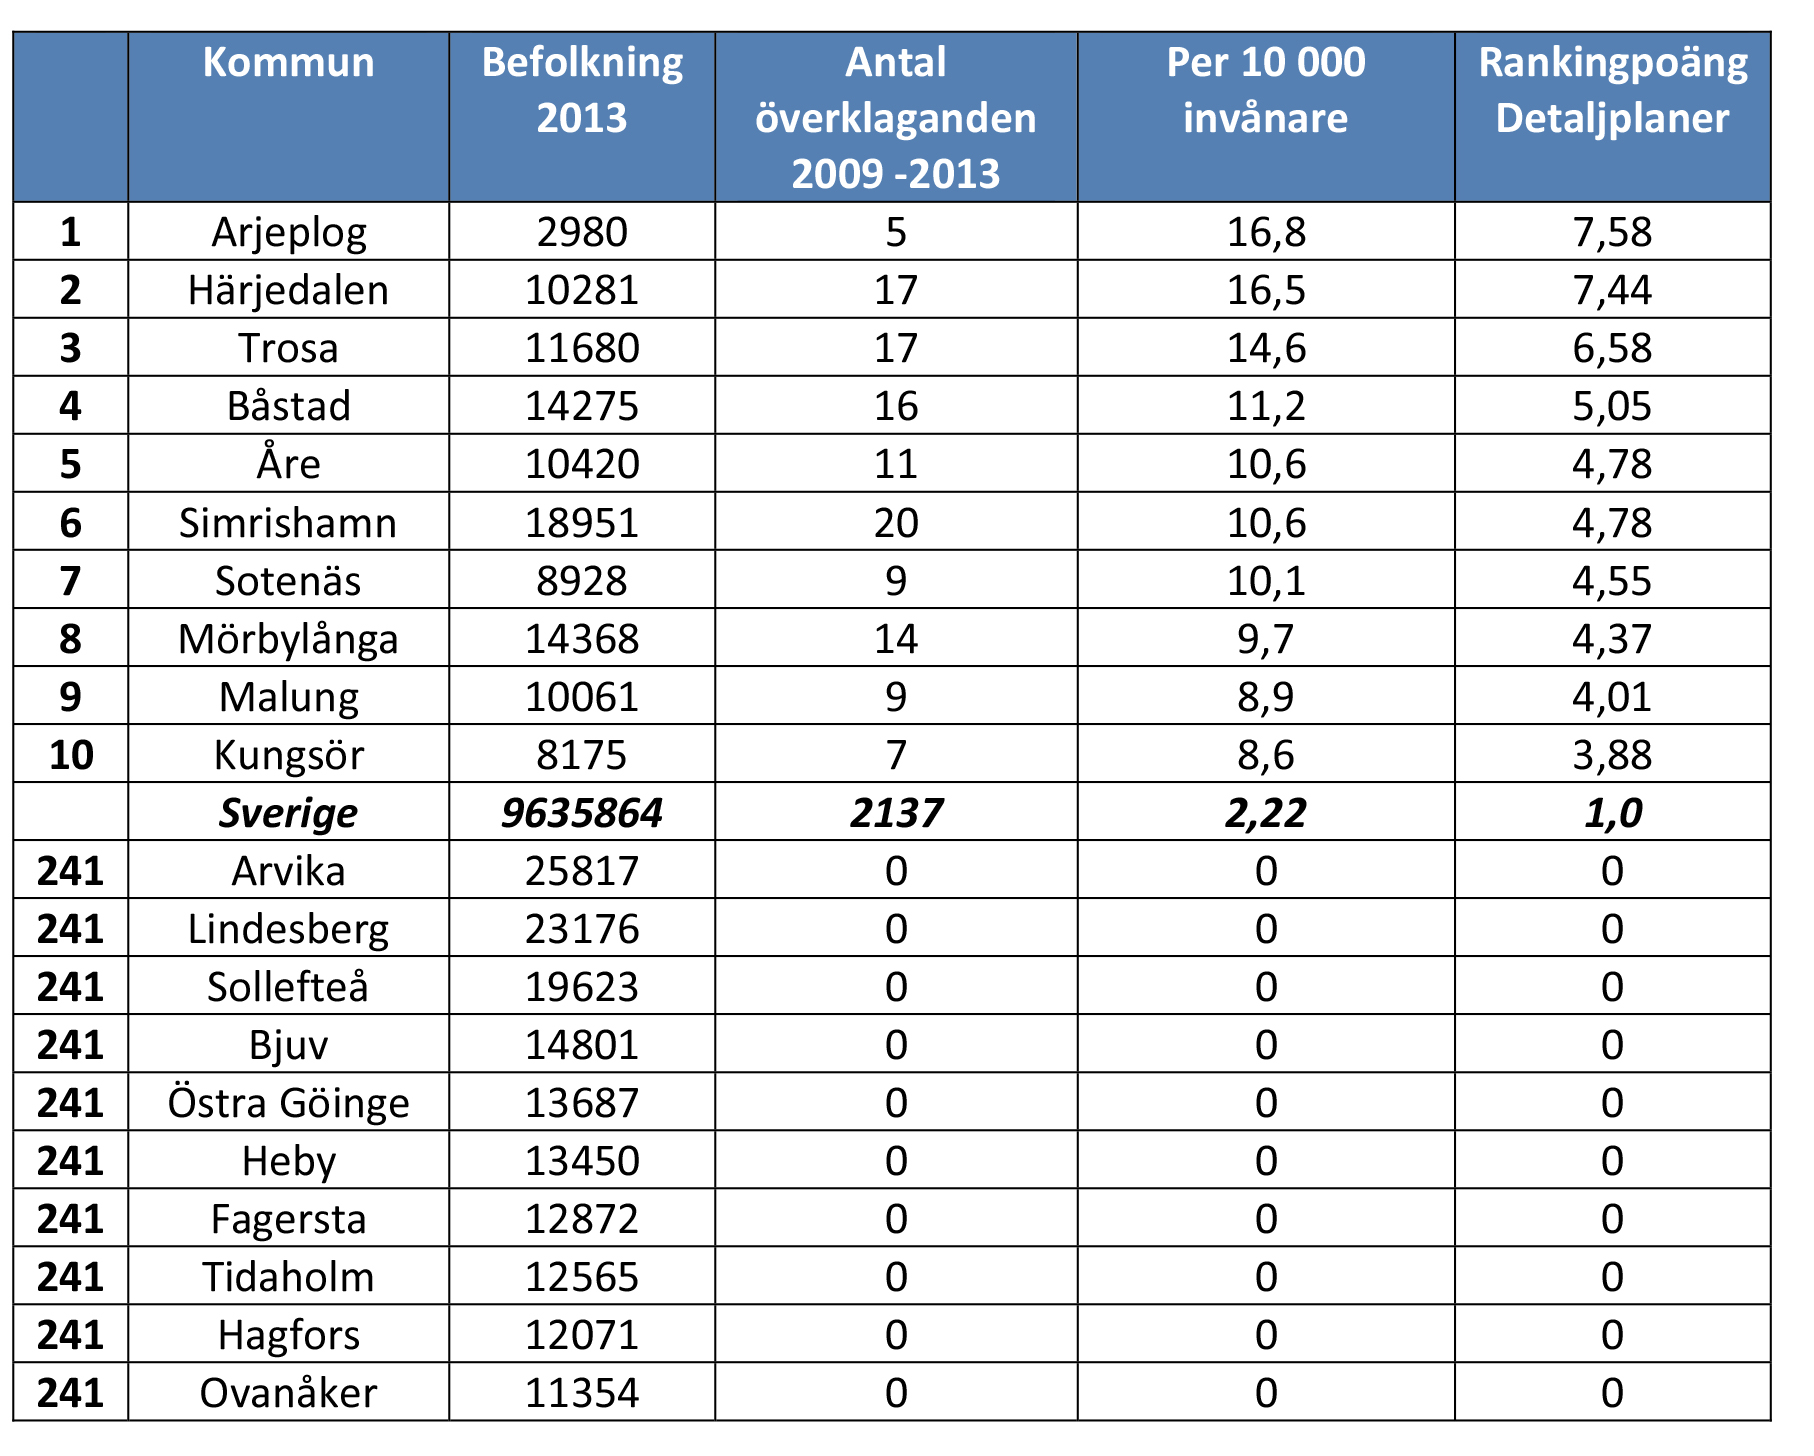 1.5 Ranking detaljplaner I tabellen visas de tio kommuner som rankas högs och lägst när det gäller flest överklagade detaljplaner per 10 000 invånare. Siffrorna gäller för perioden 2009-2013.